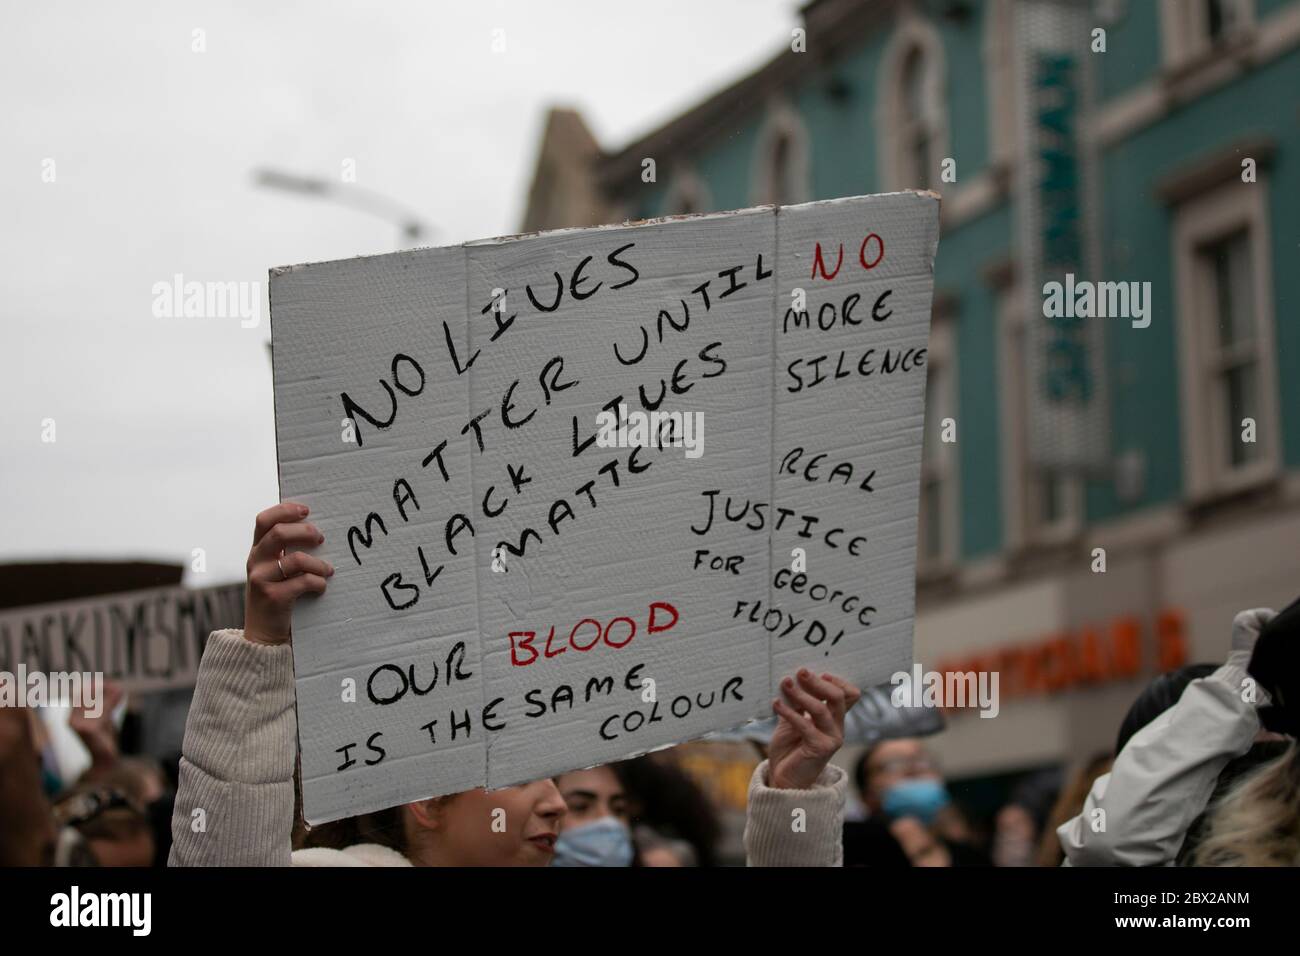 NORTHAMPTON, INGLATERRA. 3 DE JUNIO - manifestantes se reúnen en Northampton, Inglaterra en una manifestación después de que George Floyd fue asesinado por la policía en los EE.UU. (Crédito: Leila Coker | MI Noticias). Foto de stock